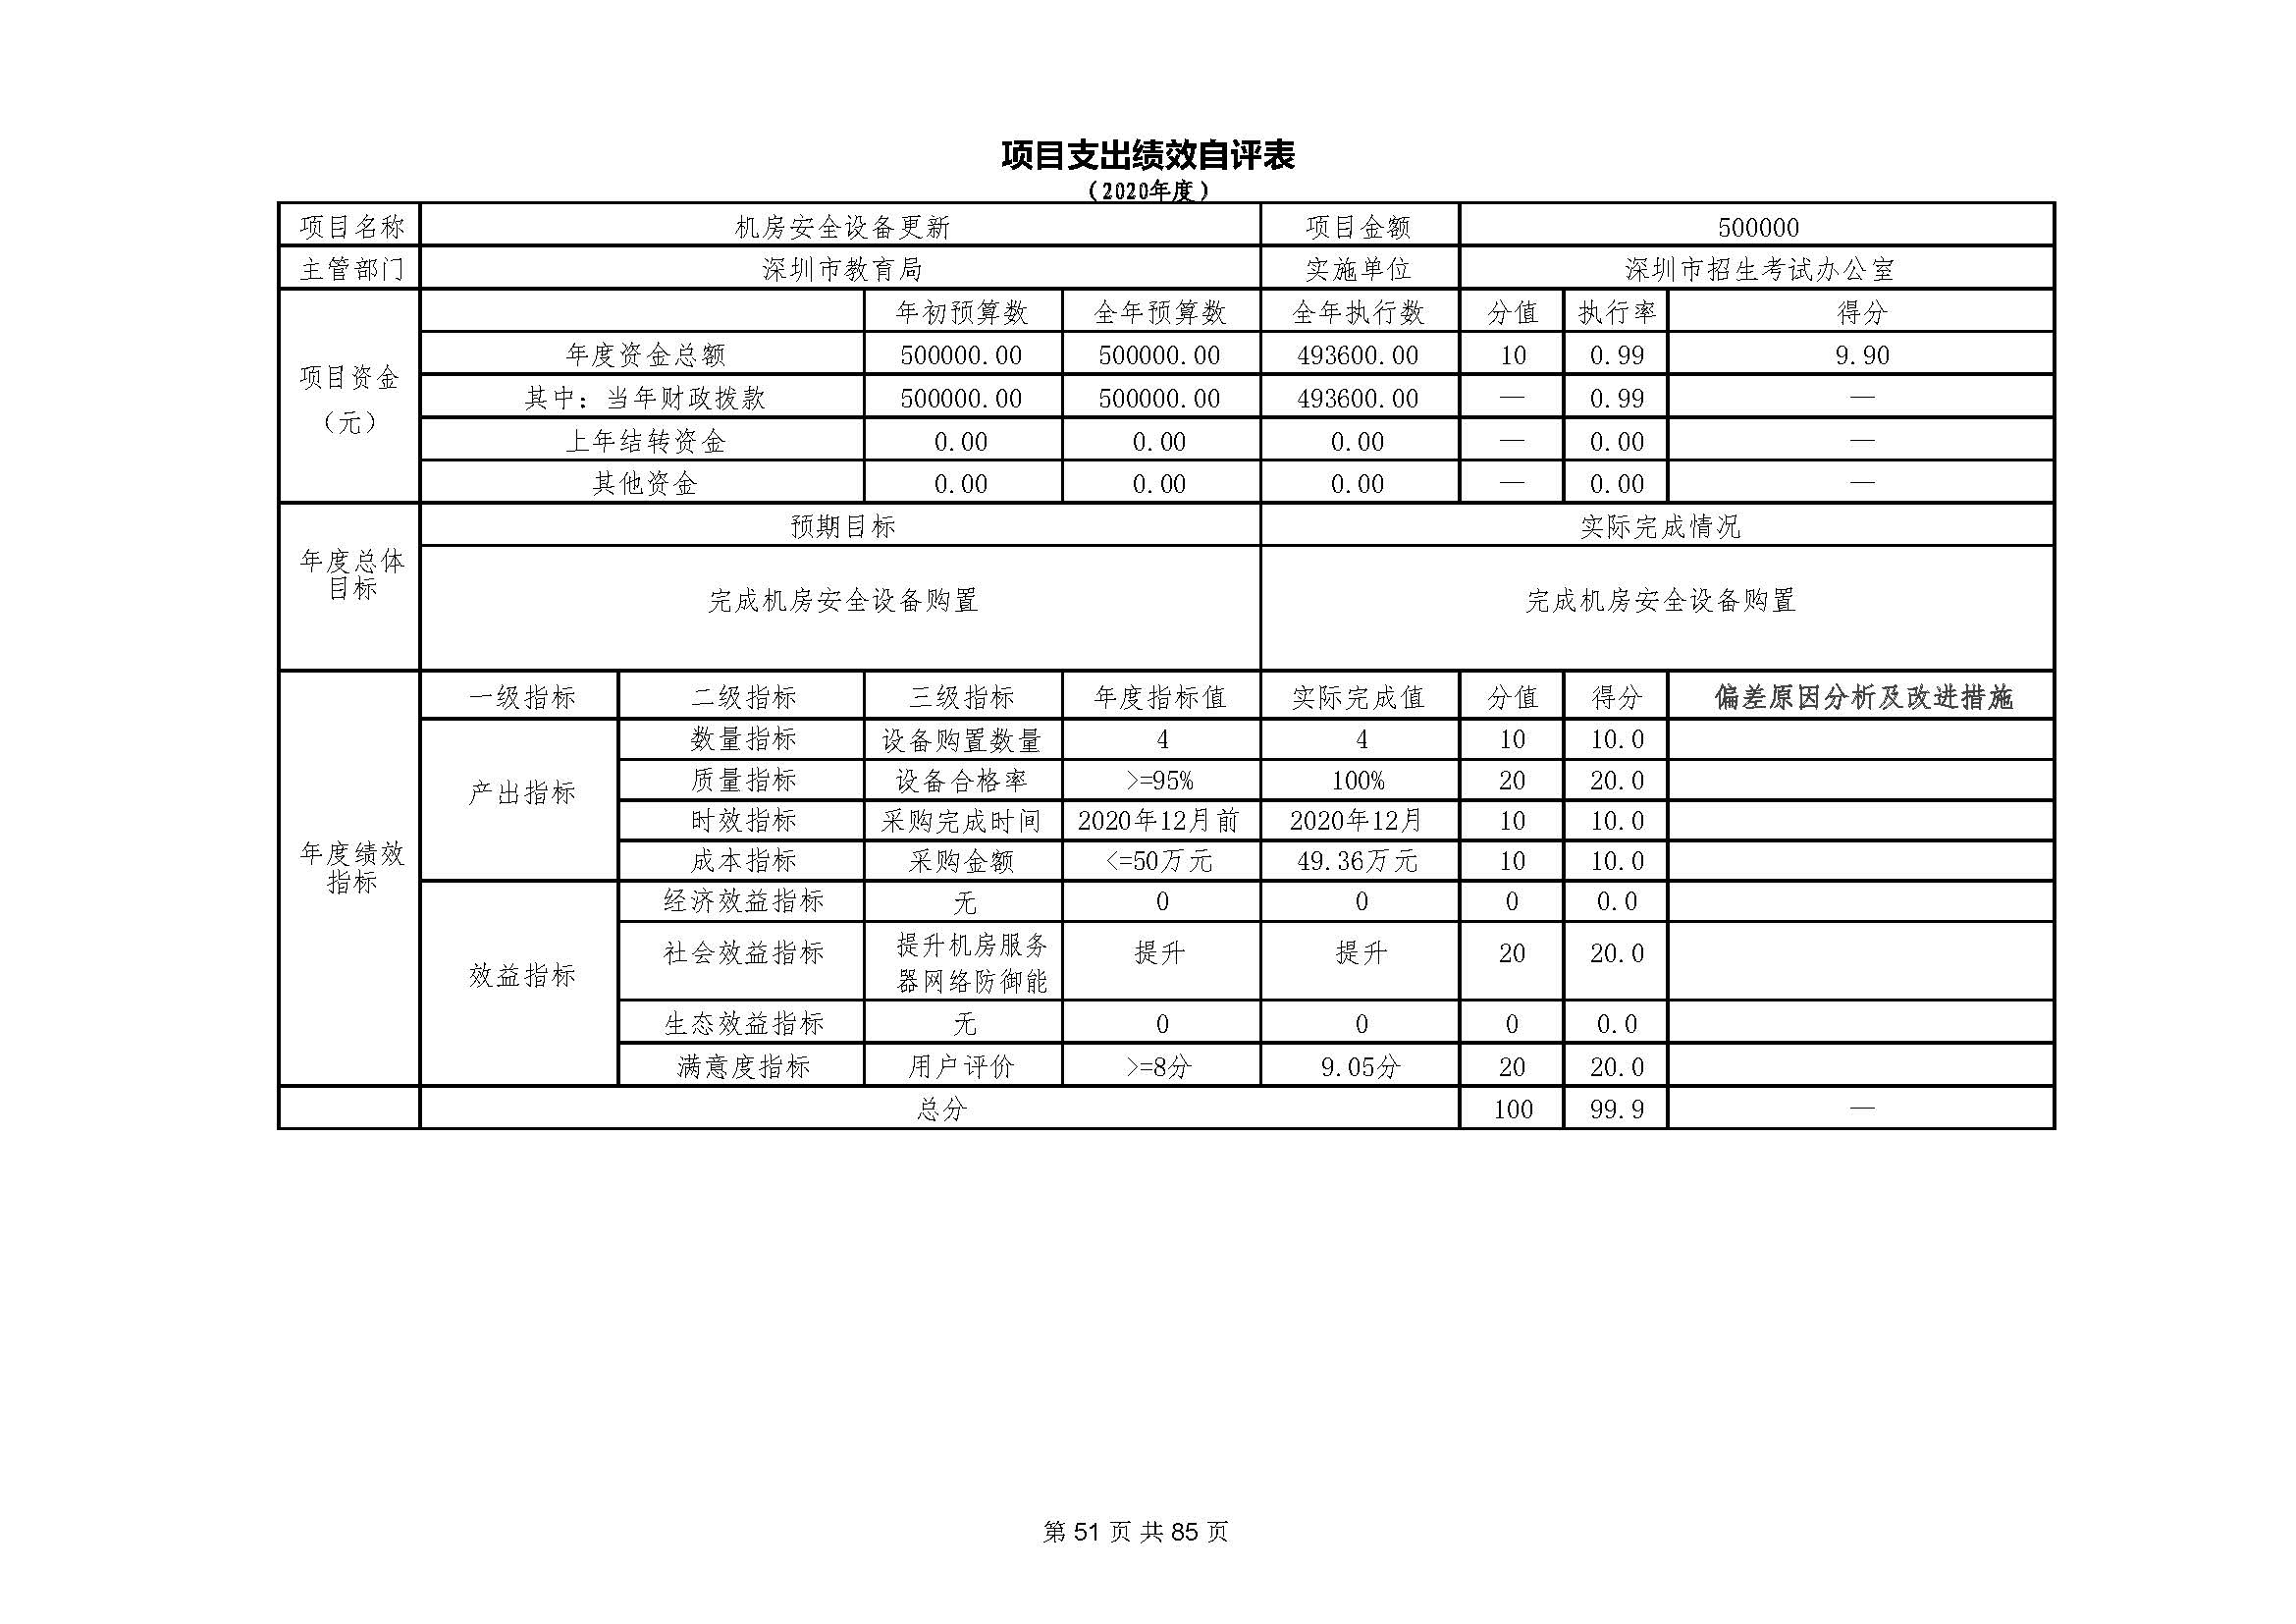 深圳市招生考试办公室2020年度部门决算_页面_52.jpg